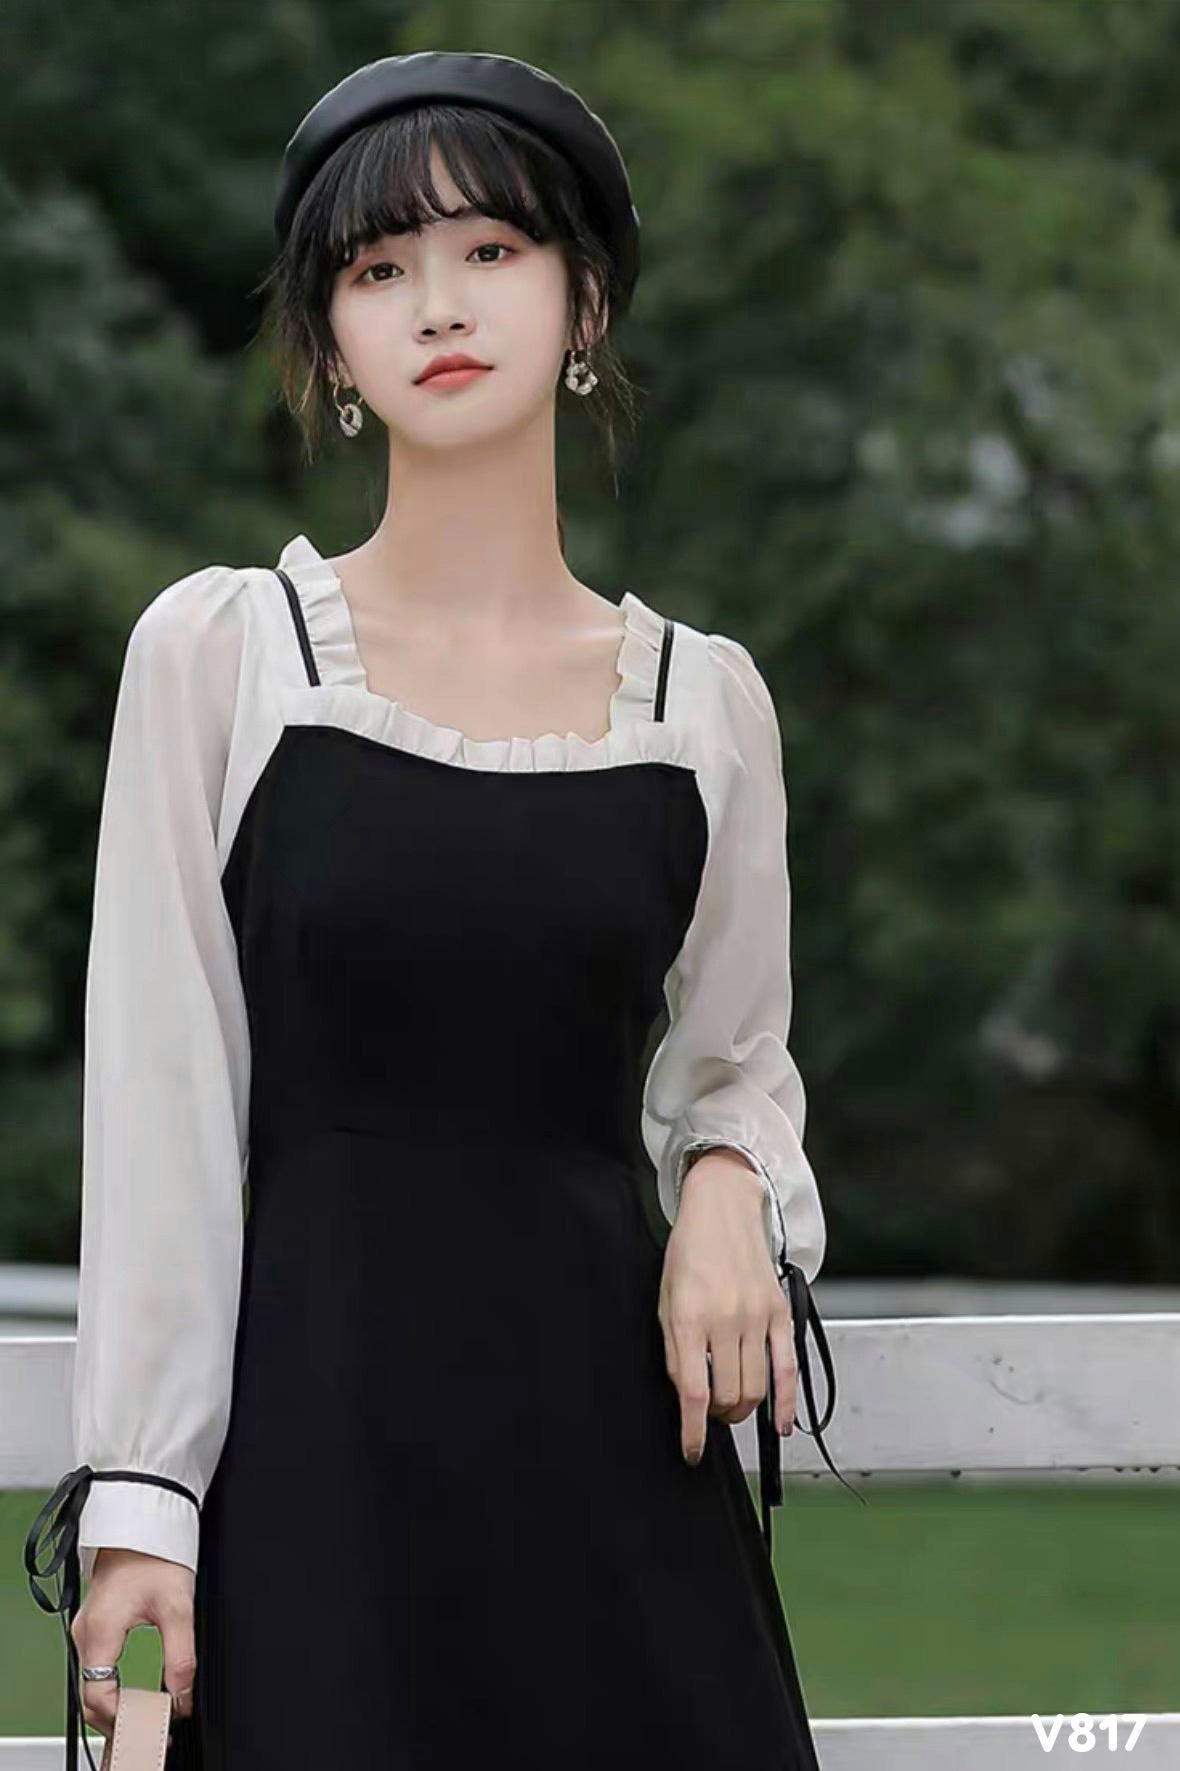 V014 Váy trắng yếm đen nơ ngực vintage công chúa đầm xòe cổ vuông 2 tầng  xẻ chân tay bồng dáng dài retro tiểu thư xinh  Shopee Việt Nam